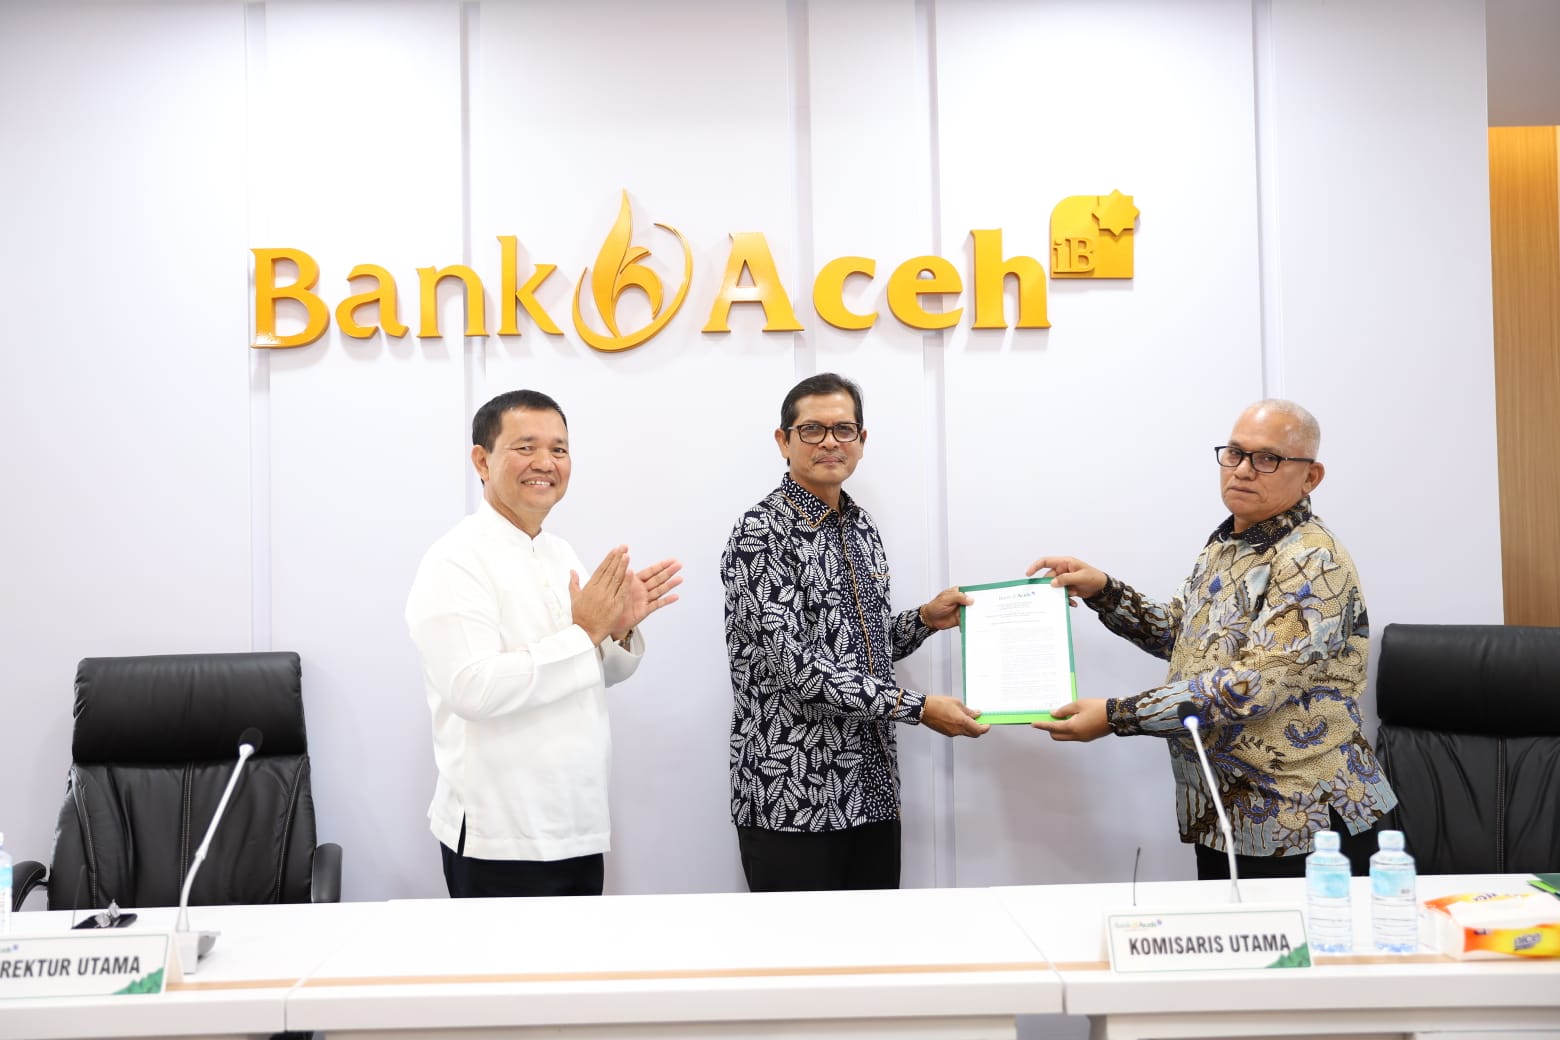 Masa Tugas Haizir Sulaiman Berakhir, Bob Rinaldi Ditunjuk Sebagai Plt Direktur Utama Bank Aceh